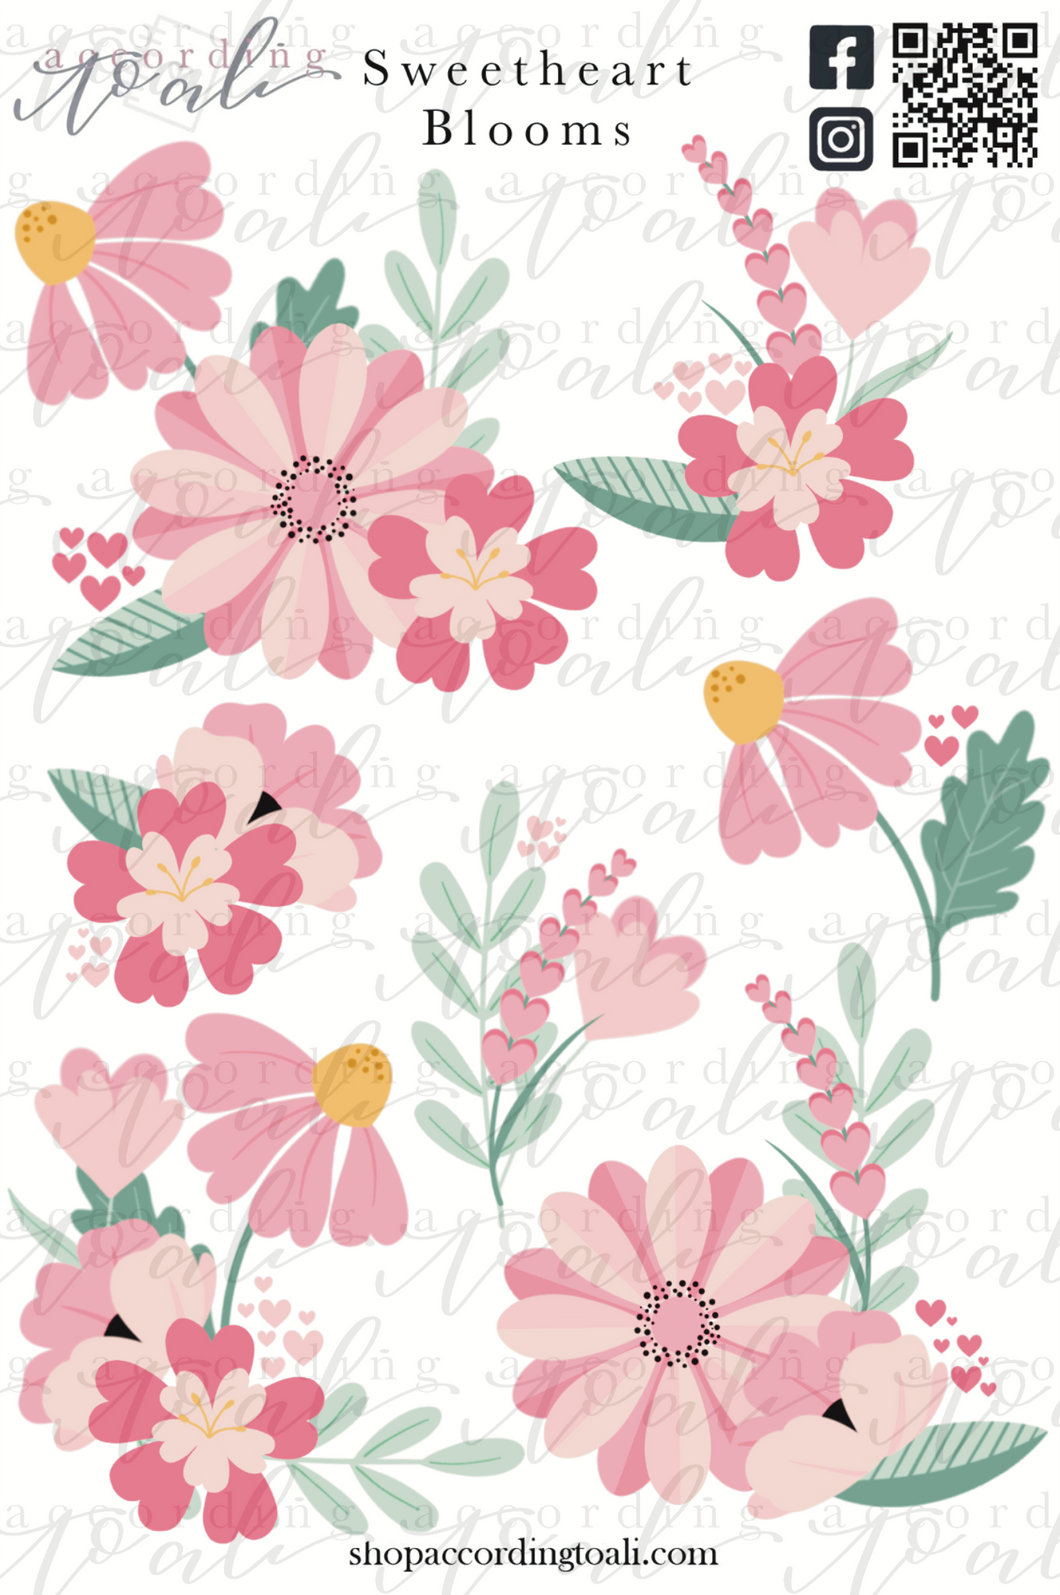 Sweetheart Blooms Sticker Sheet